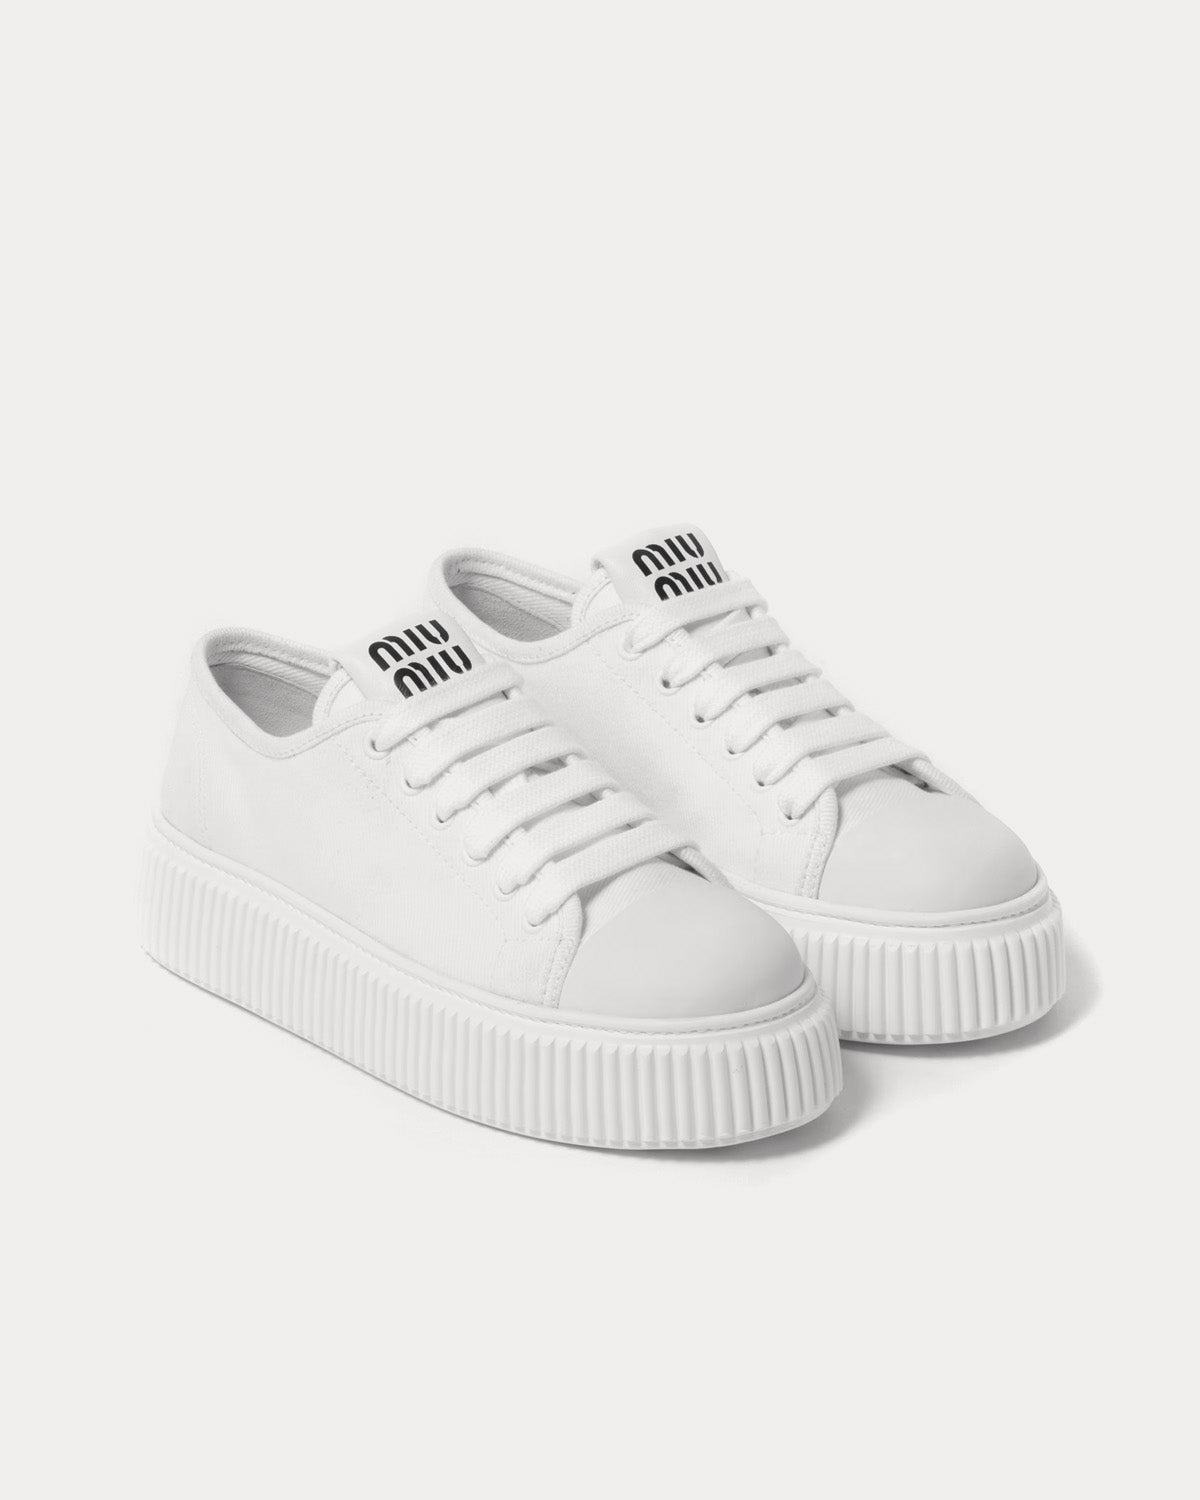 Miu Miu - Platform Denim White Low Top Sneakers